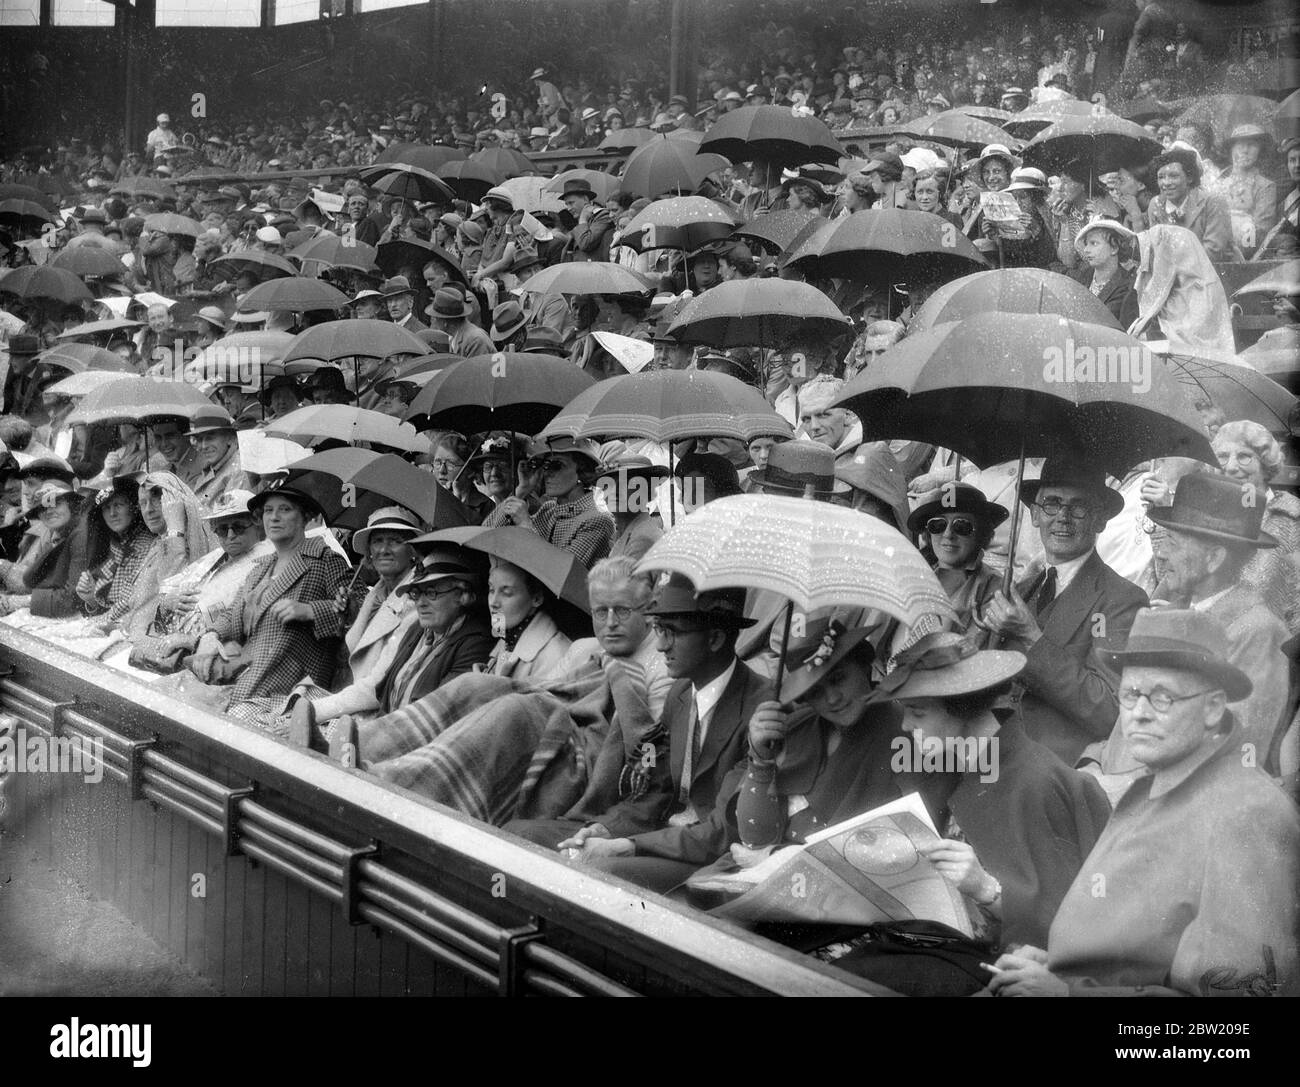 Por primera vez desde que comenzó el campeonato, la lluvia dejó de jugar en la Corte Central de Wimbledon, durante el partido entre la FRU Sperling, la favorita danesa para el título femenino, y la Srta. Alice Marble, la campeona de mujeres de Estados Unidos. Paraguas que protegen a la multitud en el Tribunal Central. 29 de junio de 1937 Foto de stock